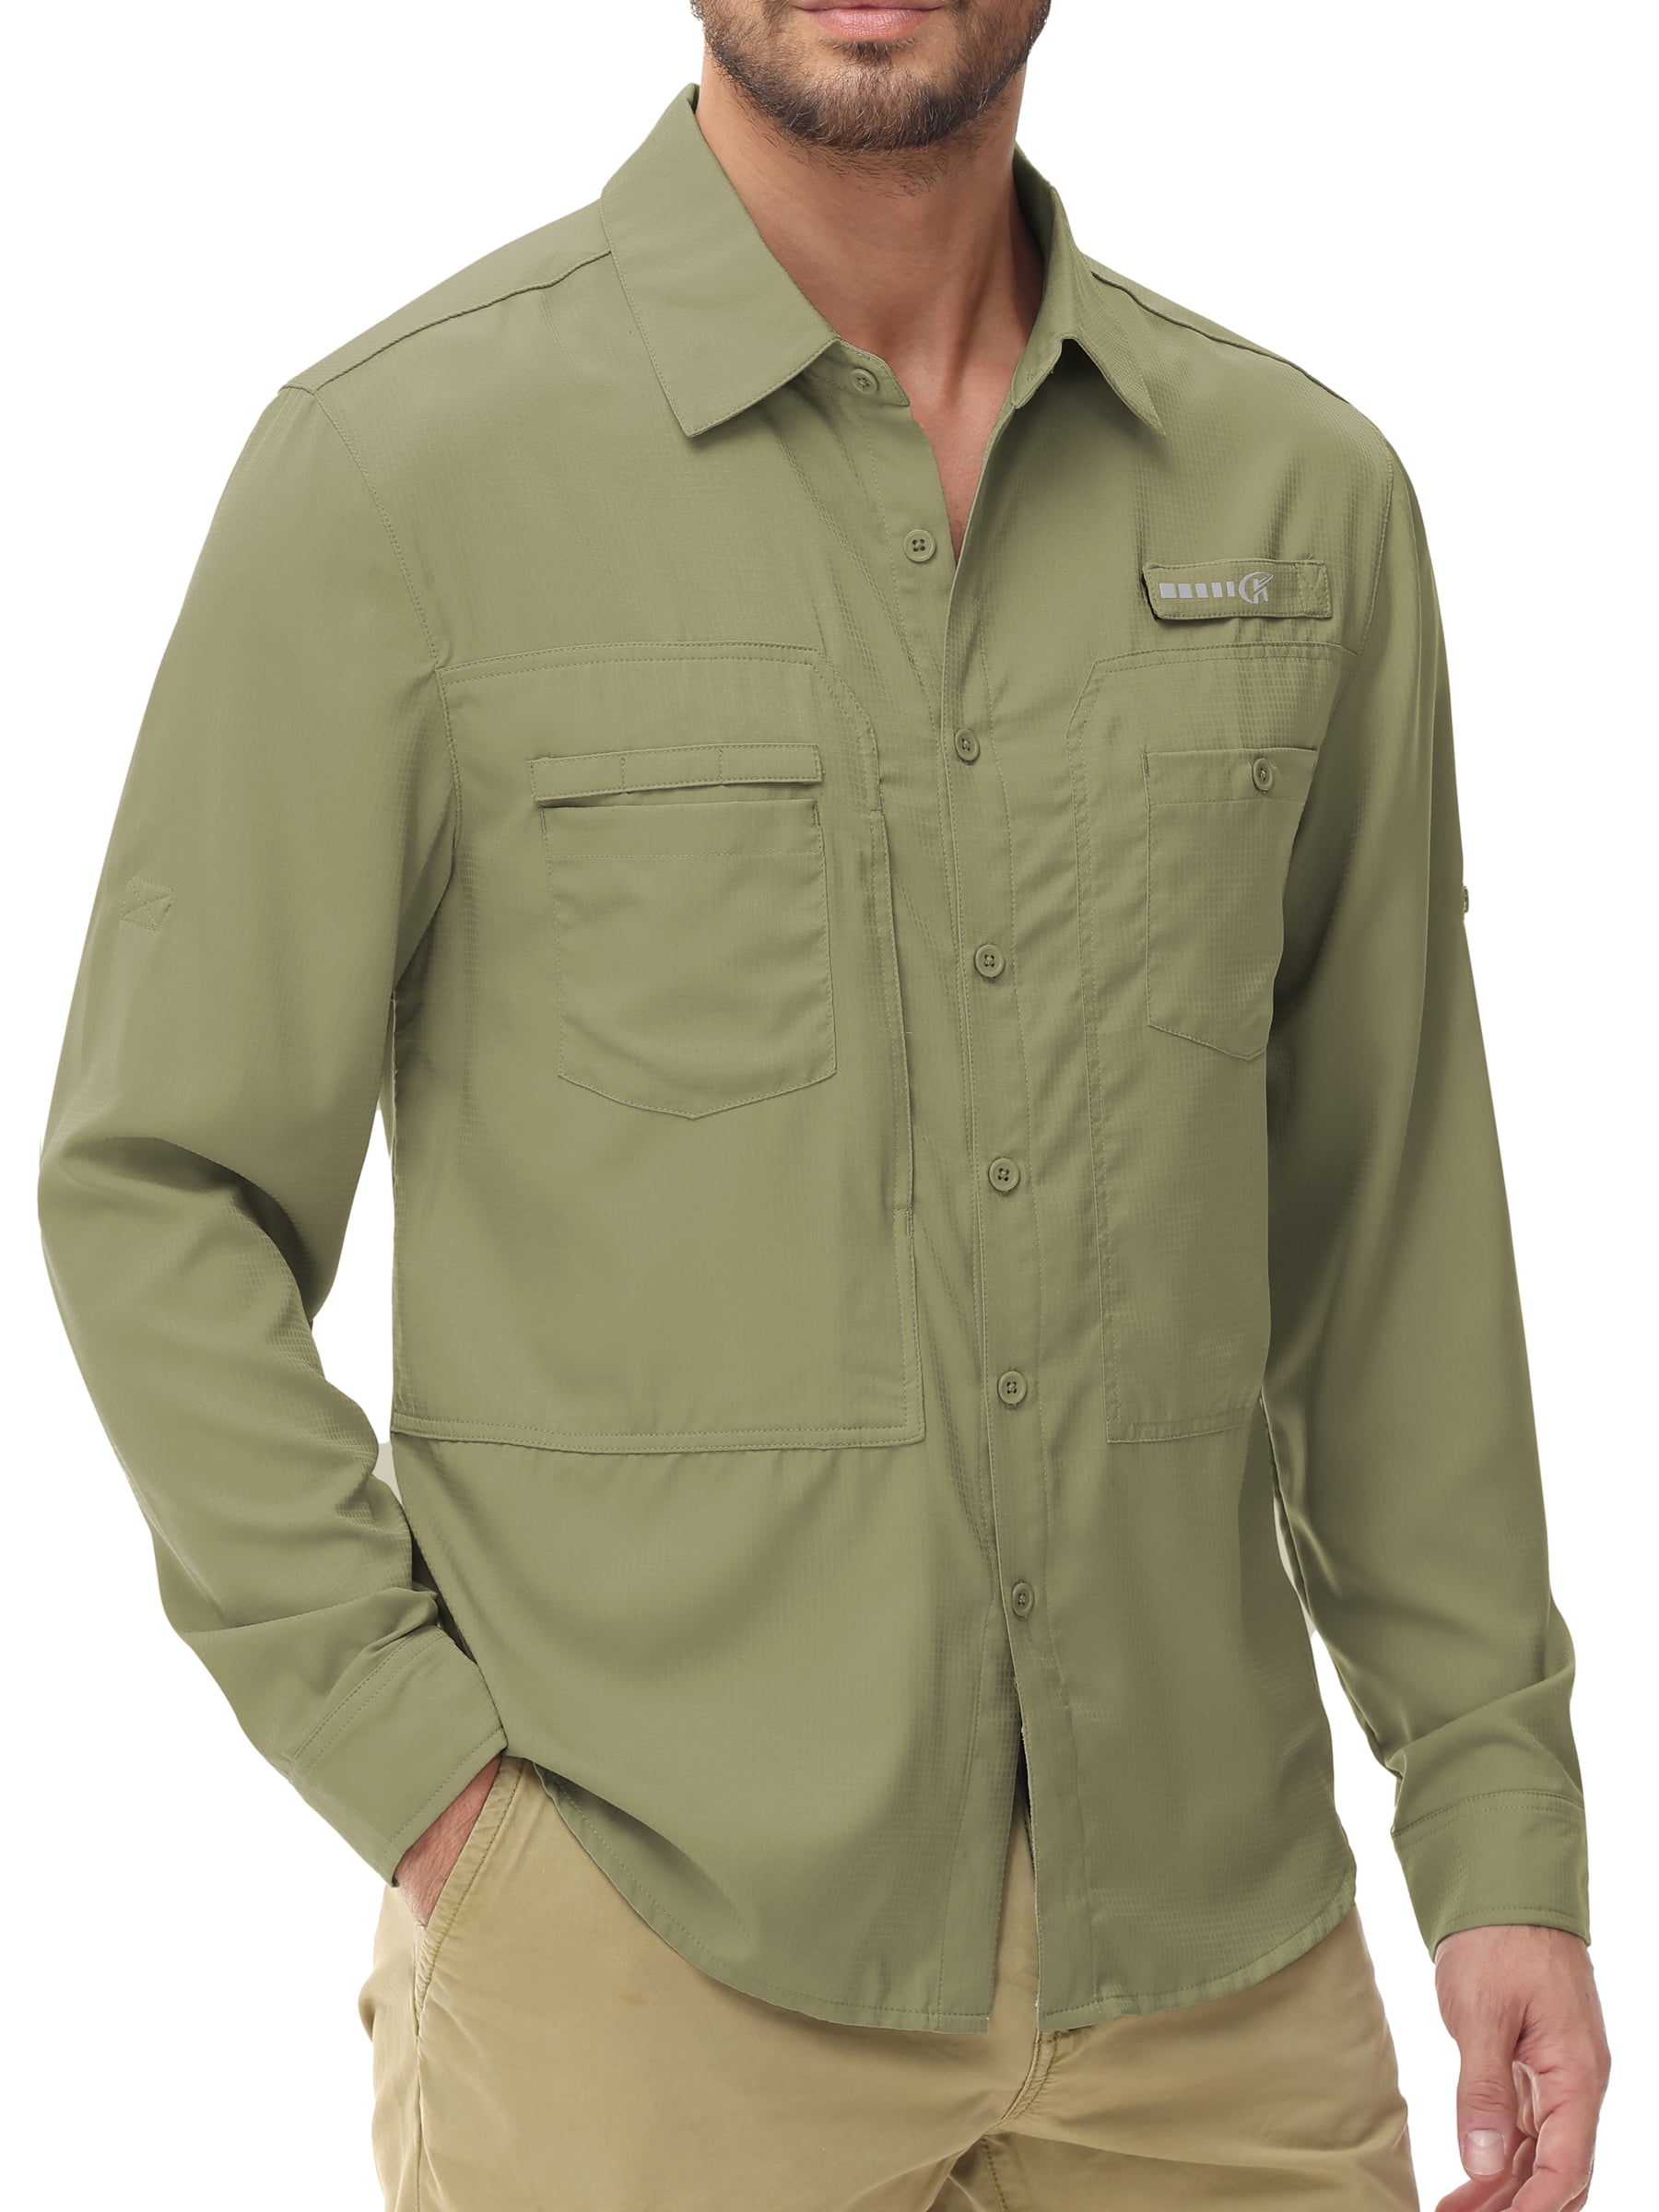 Hiking Sun Protection Shirts for Men，Long Sleeve Shirt Outdoor Lightweight  Quick Dry Fishing Shirts,5046 Khaki XL : : Fashion